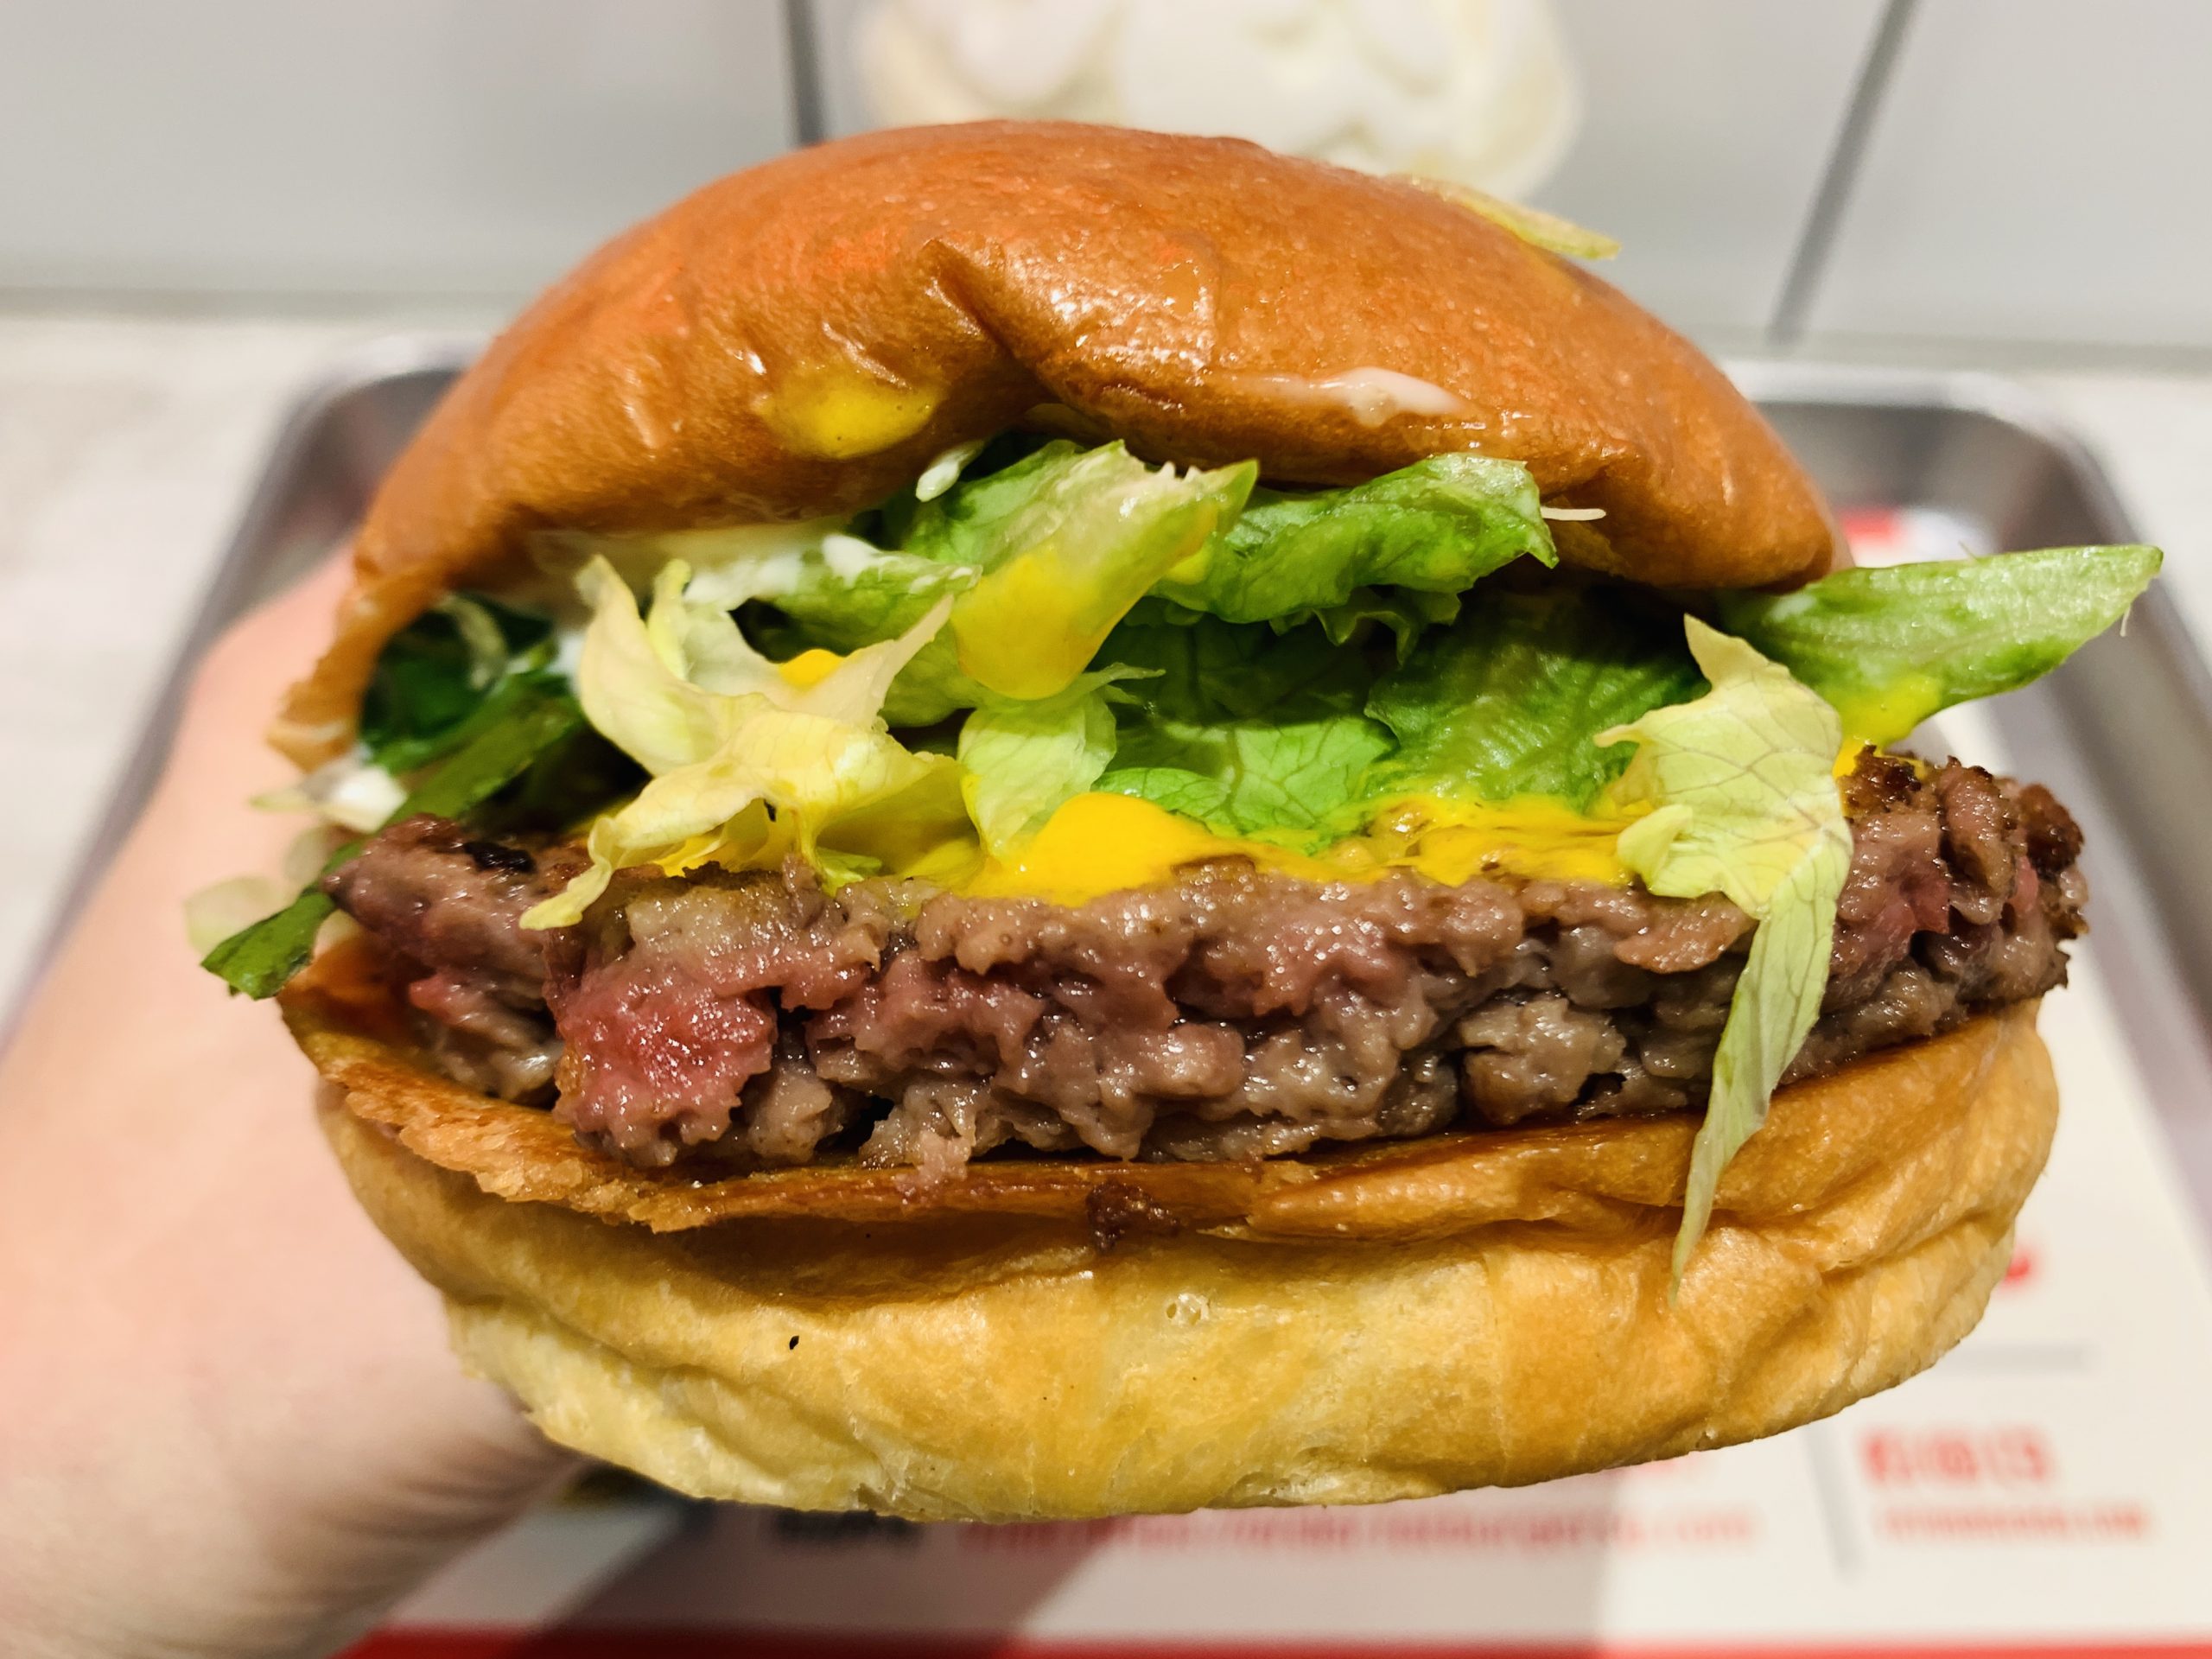 Fatburger - Impossible Burger 2